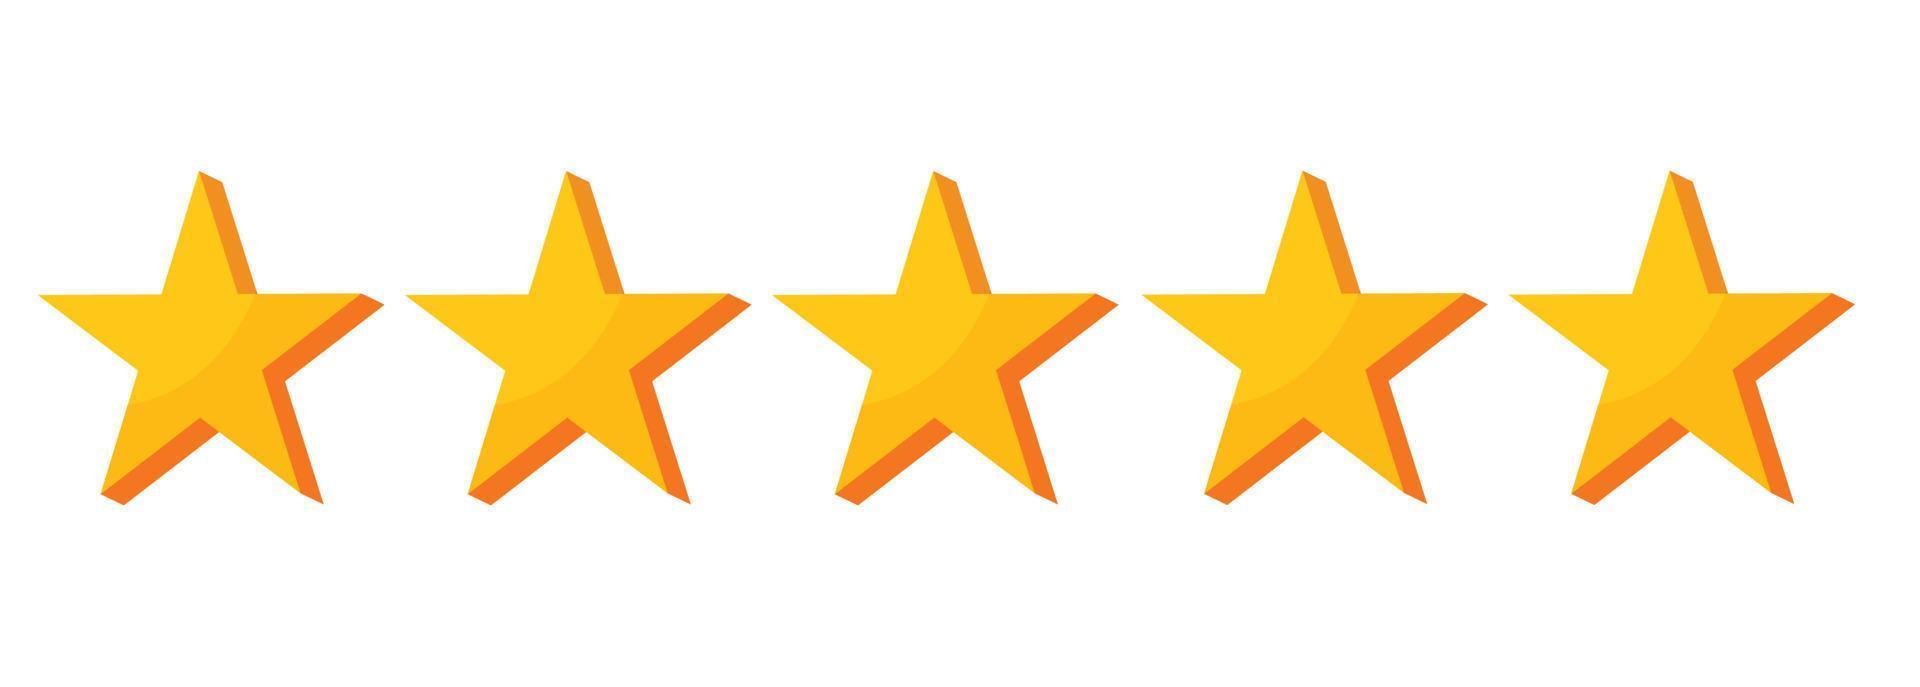 stars customer reviews vector illustration